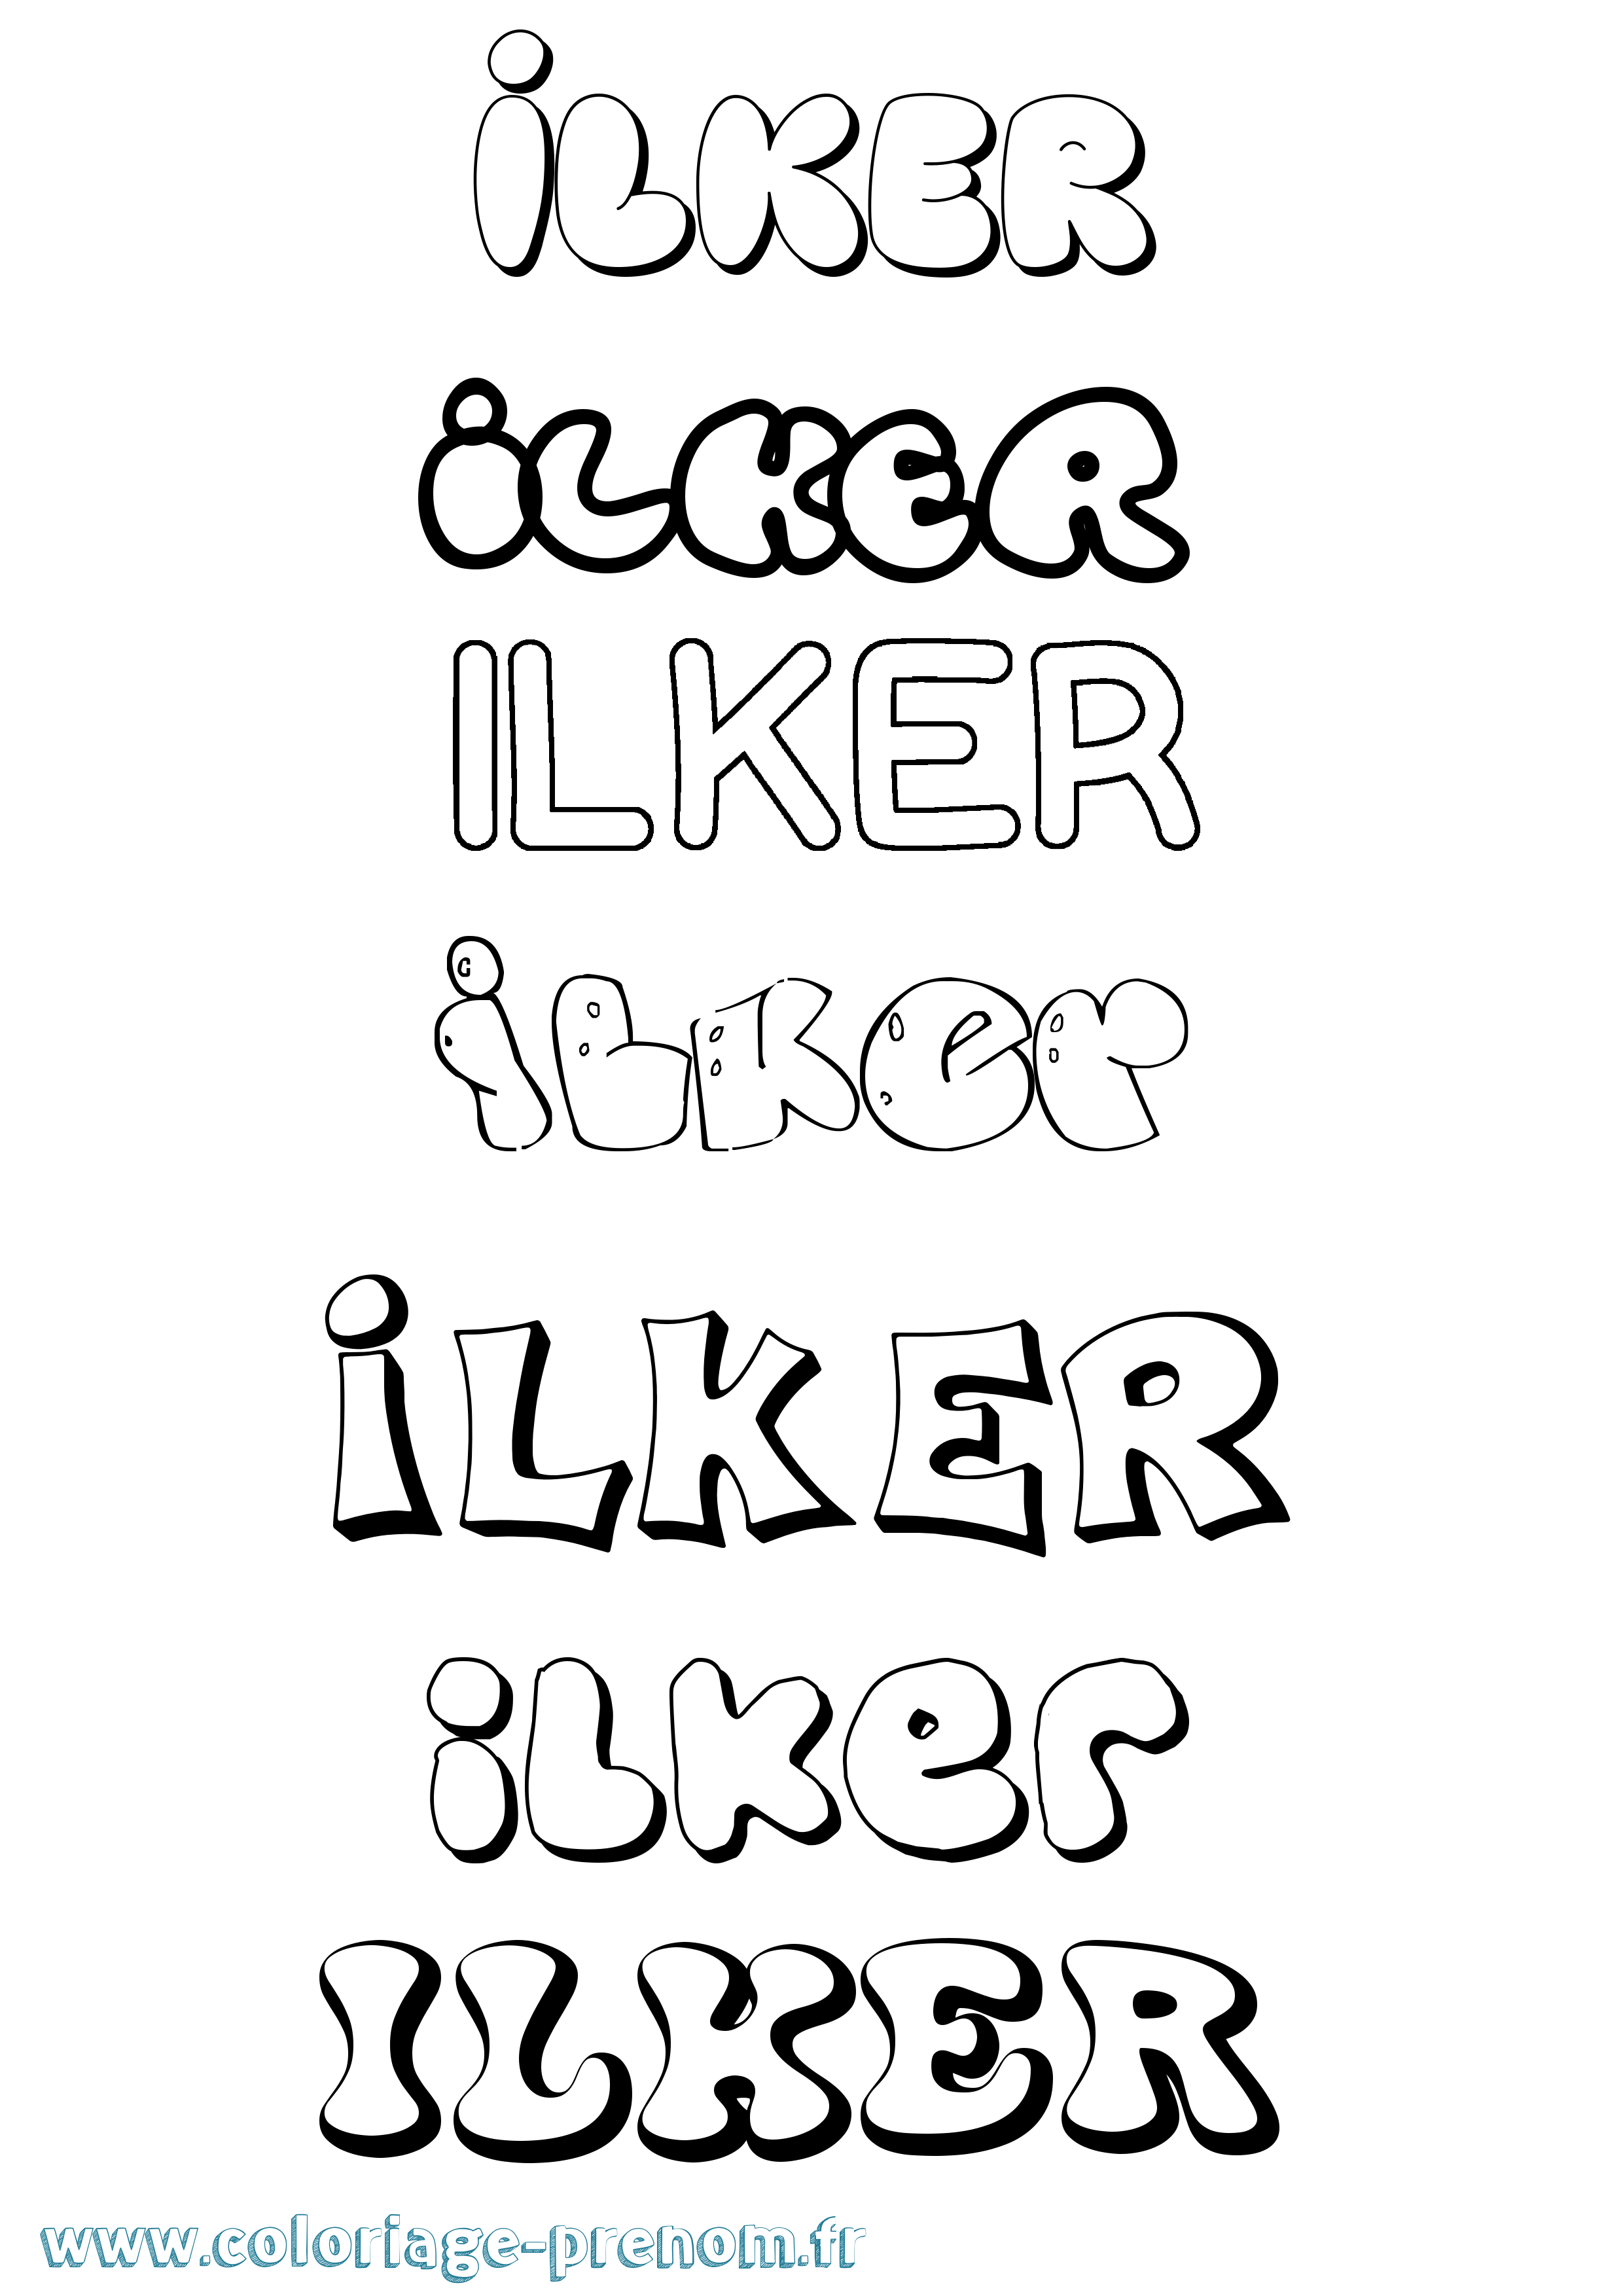 Coloriage prénom Ilker Bubble